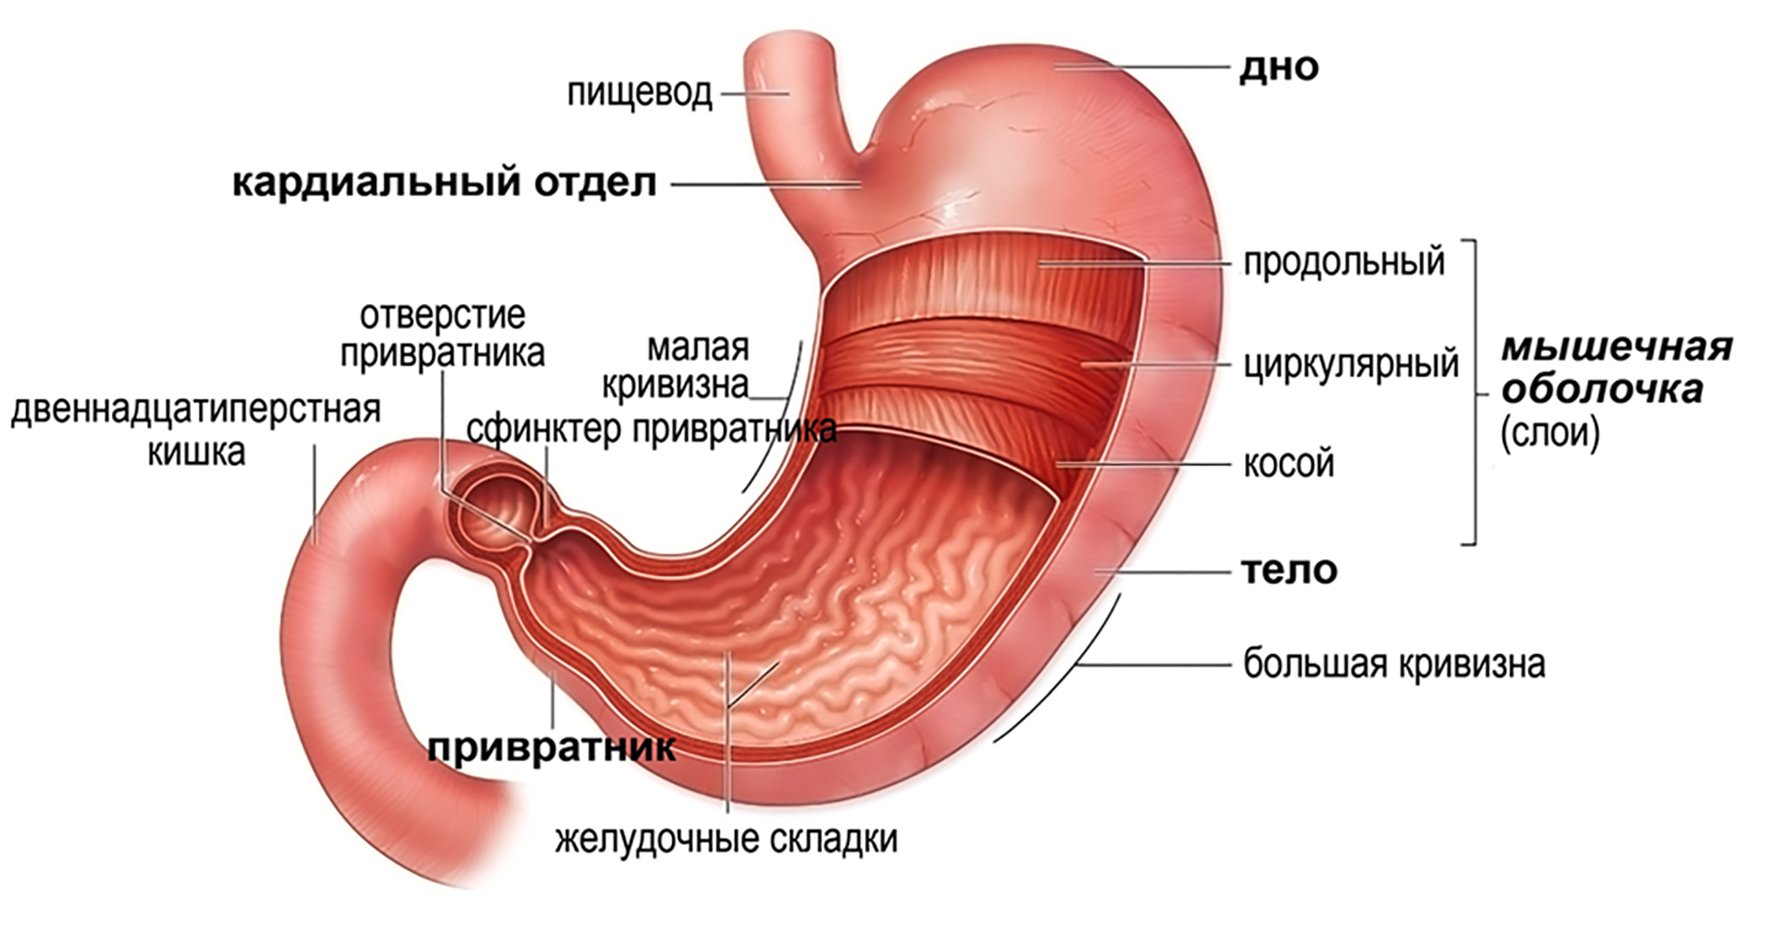 Внутреннее строение желудка. Внешнее строение желудка анатомия. Желудок строение анатомия атлас. Строение желудка человека привратник. Привратник желудка анатомия.